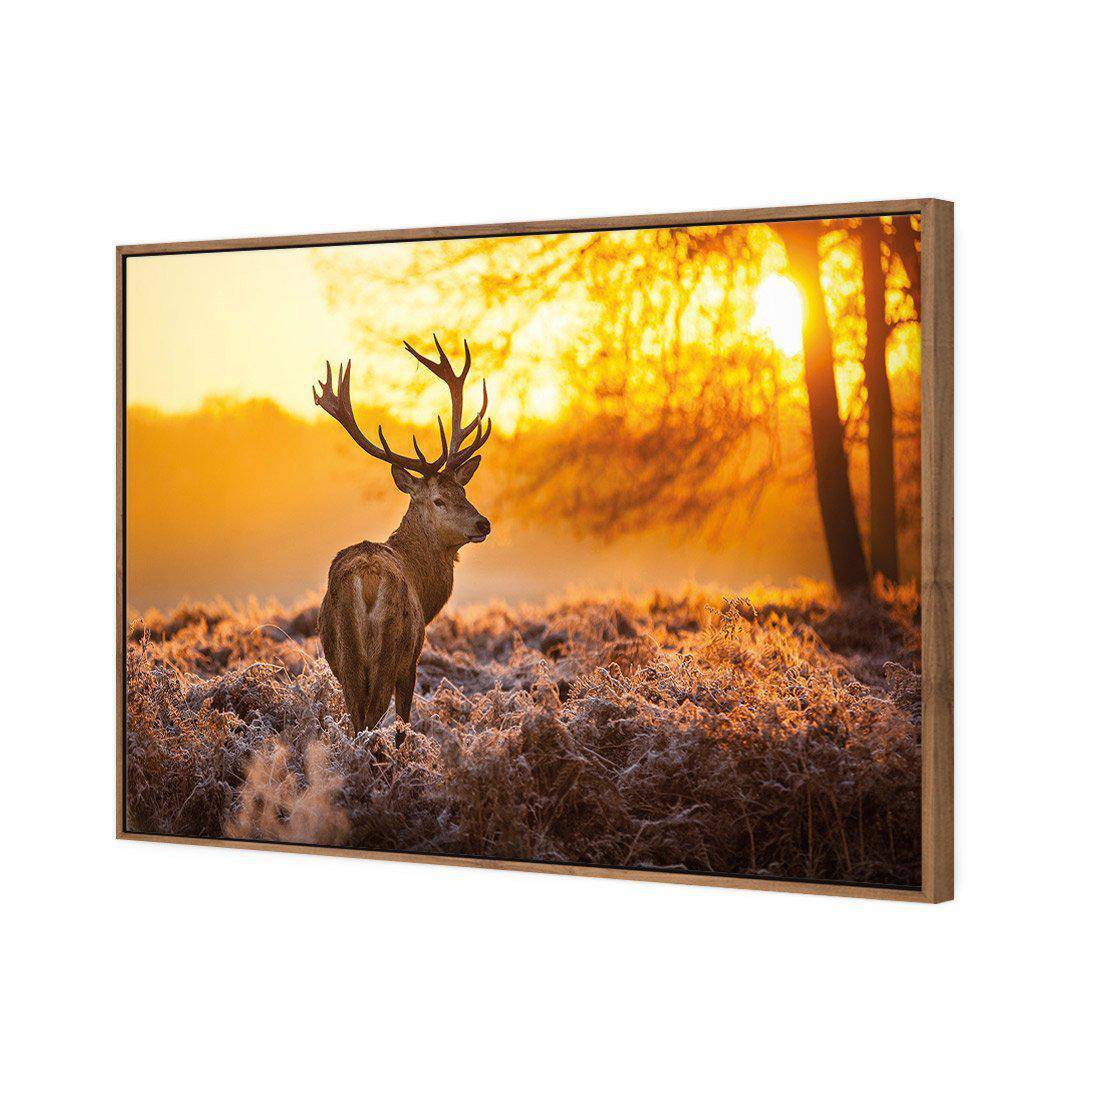 Sunset Deer Returns Canvas Art-Canvas-Wall Art Designs-45x30cm-Canvas - Natural Frame-Wall Art Designs